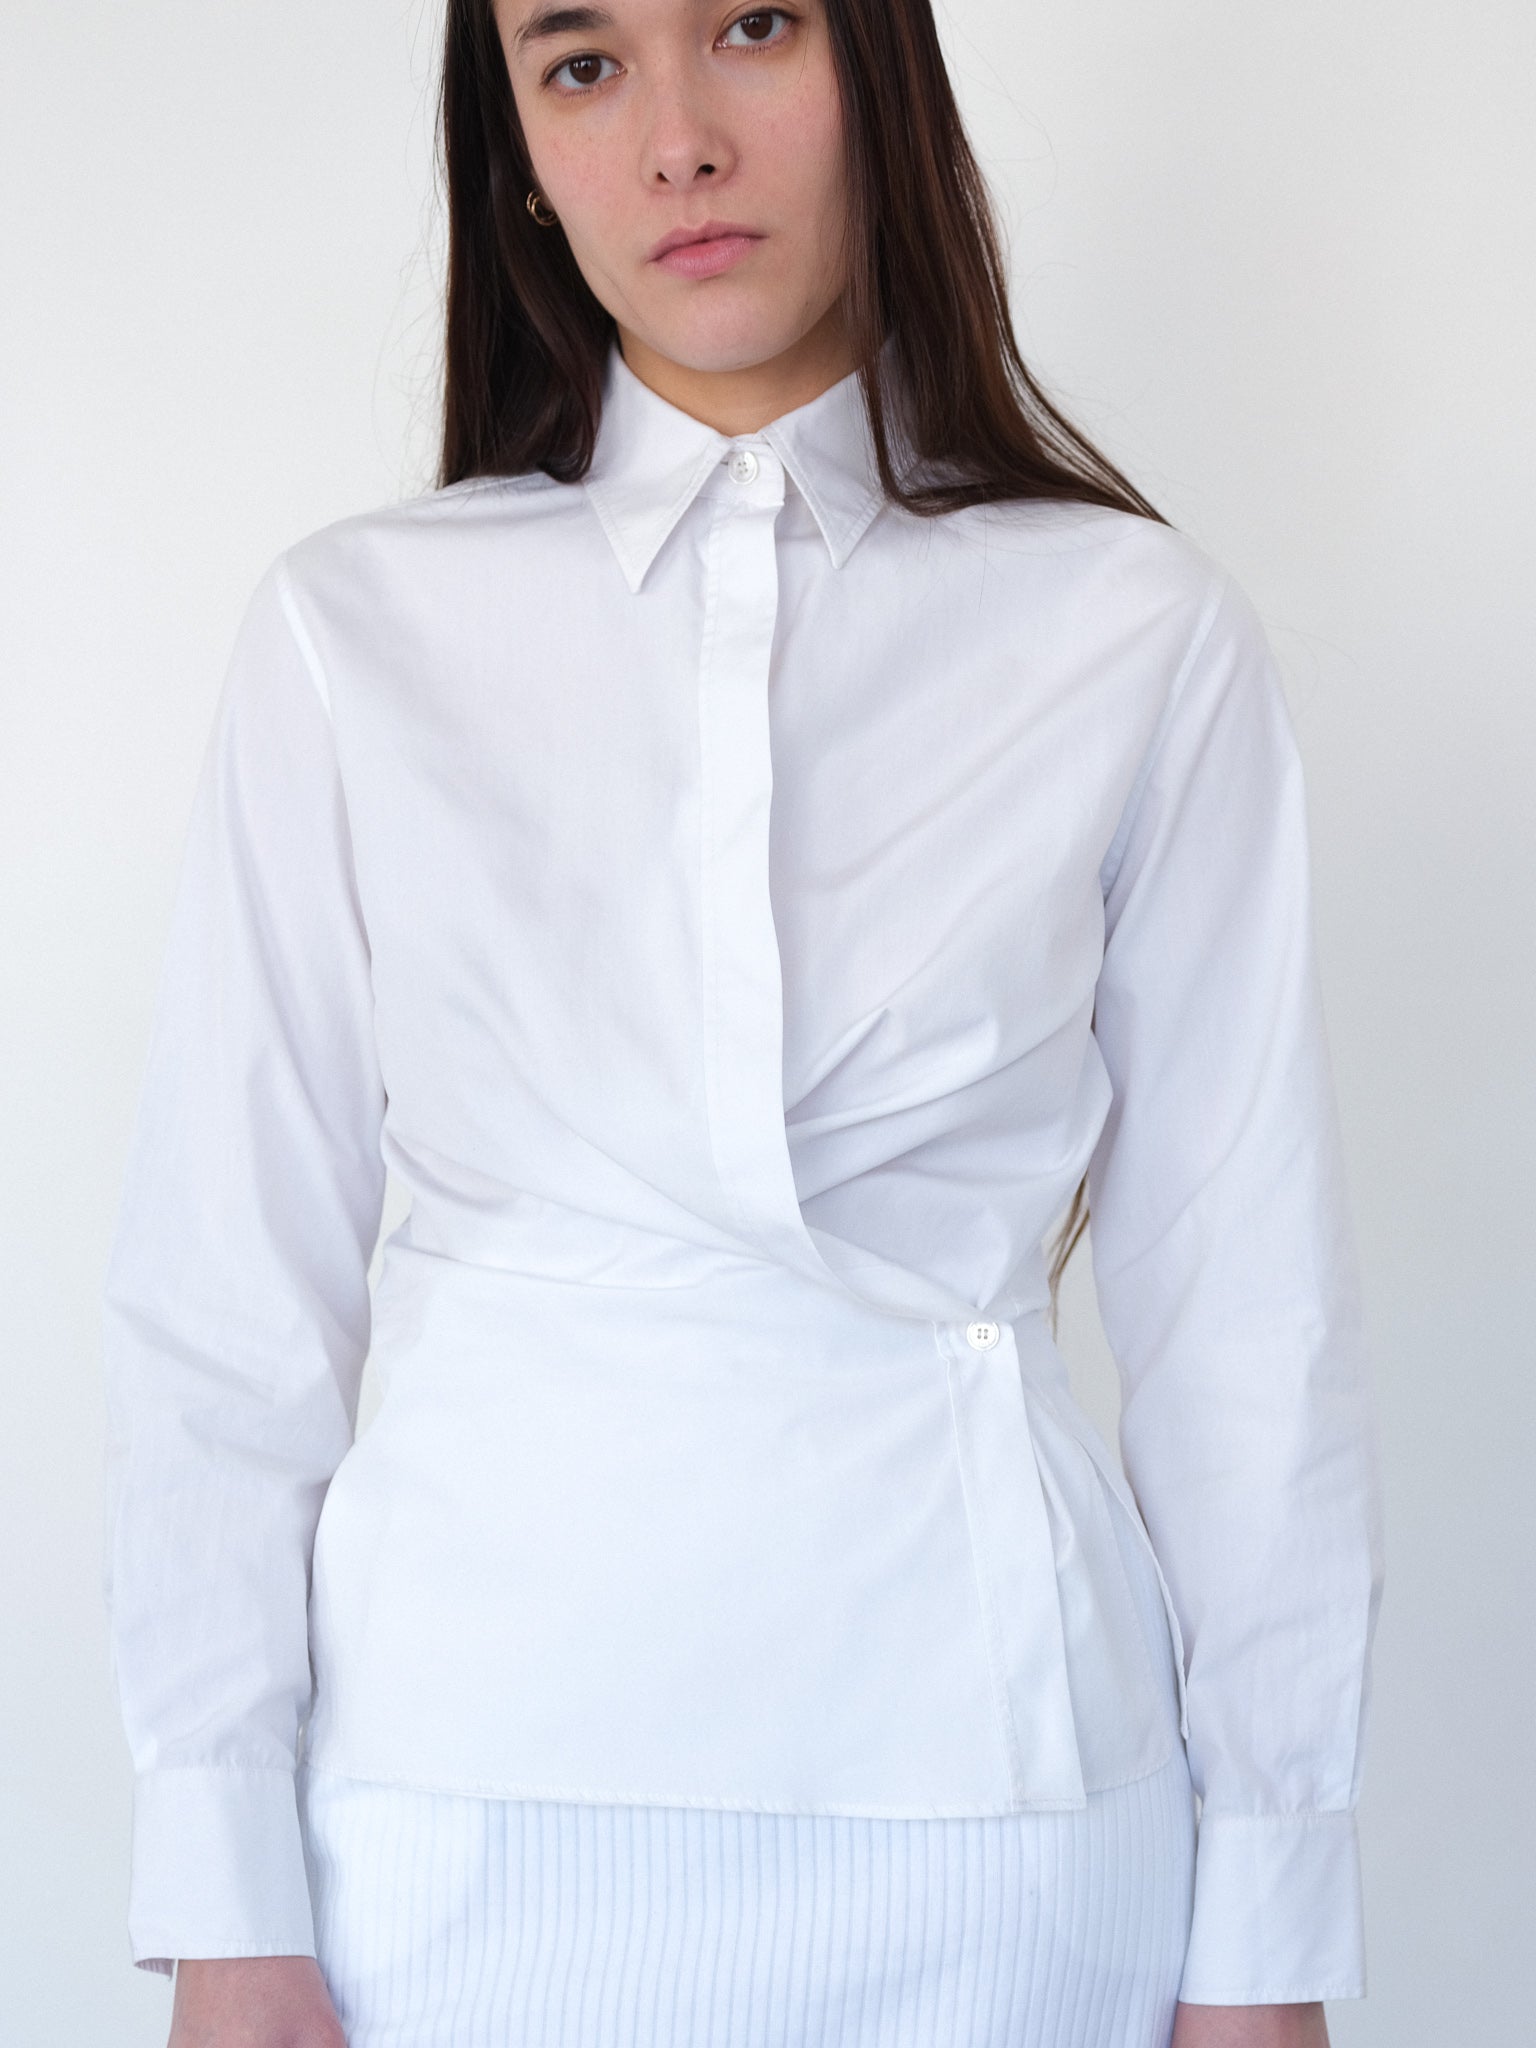 Hermès cotton shirt